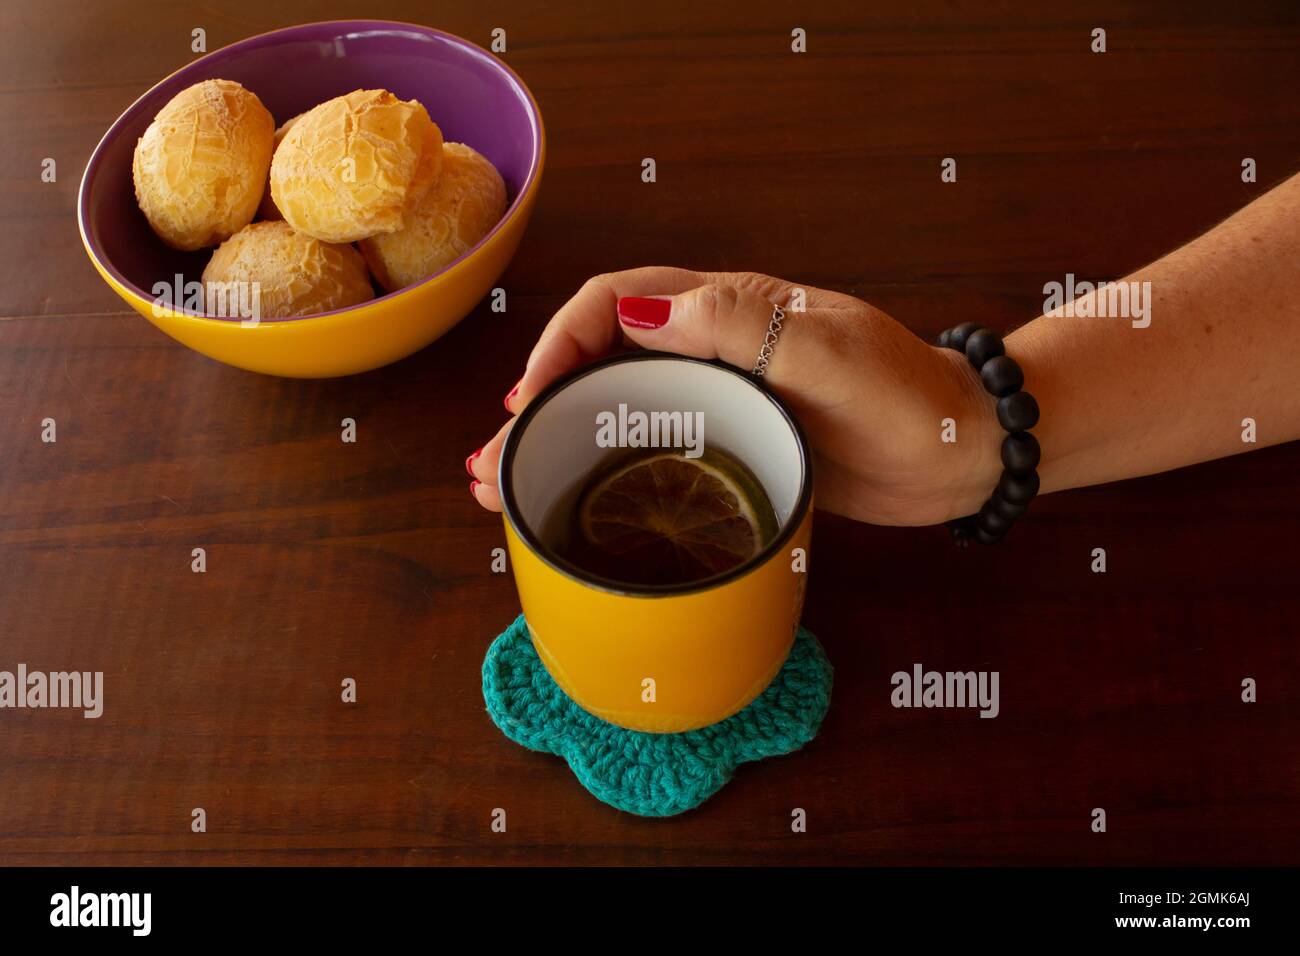 Eine weibliche Hand, die einen Becher Tee und eine Schüssel mit Käsebuns hält. Stockfoto